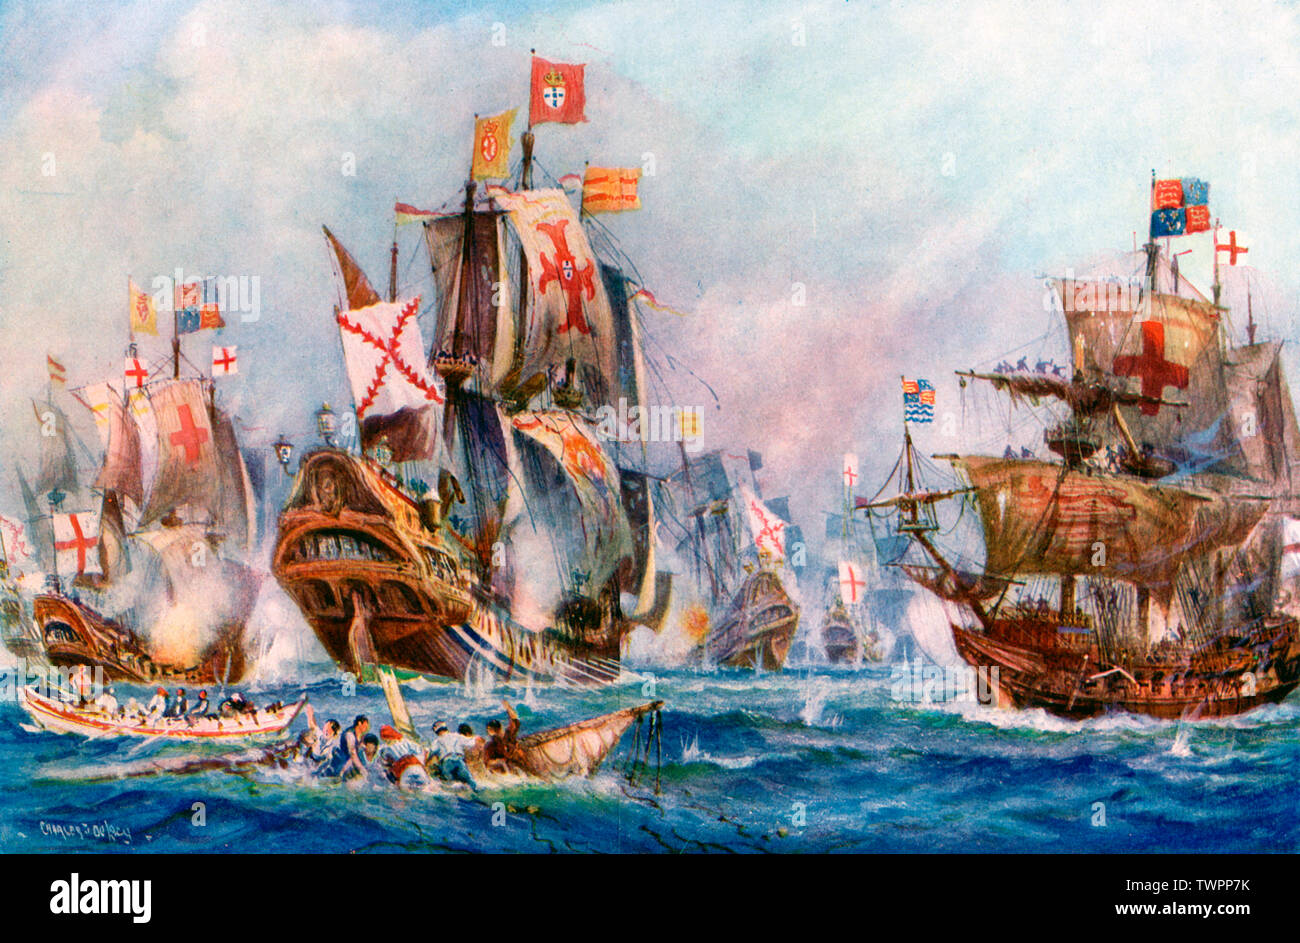 « La victoire glorieuse des marins d'Elizabeth sur l'Armada espagnole, 1588 ». Par Charles de Lacy (1856-1929). L'Armada espagnole était une flotte de la marine espagnole dont le roi Philippe II d'Espagne (1527-1598) a fait l'usage célèbre pour attaquer la Grande-Bretagne en 1588. Il a été défait par la Marine royale d'Angleterre sous le commandement de Sir Francis Drake (c1540-1596), sous le règne de la reine Elizabeth I (1533-1603). Banque D'Images